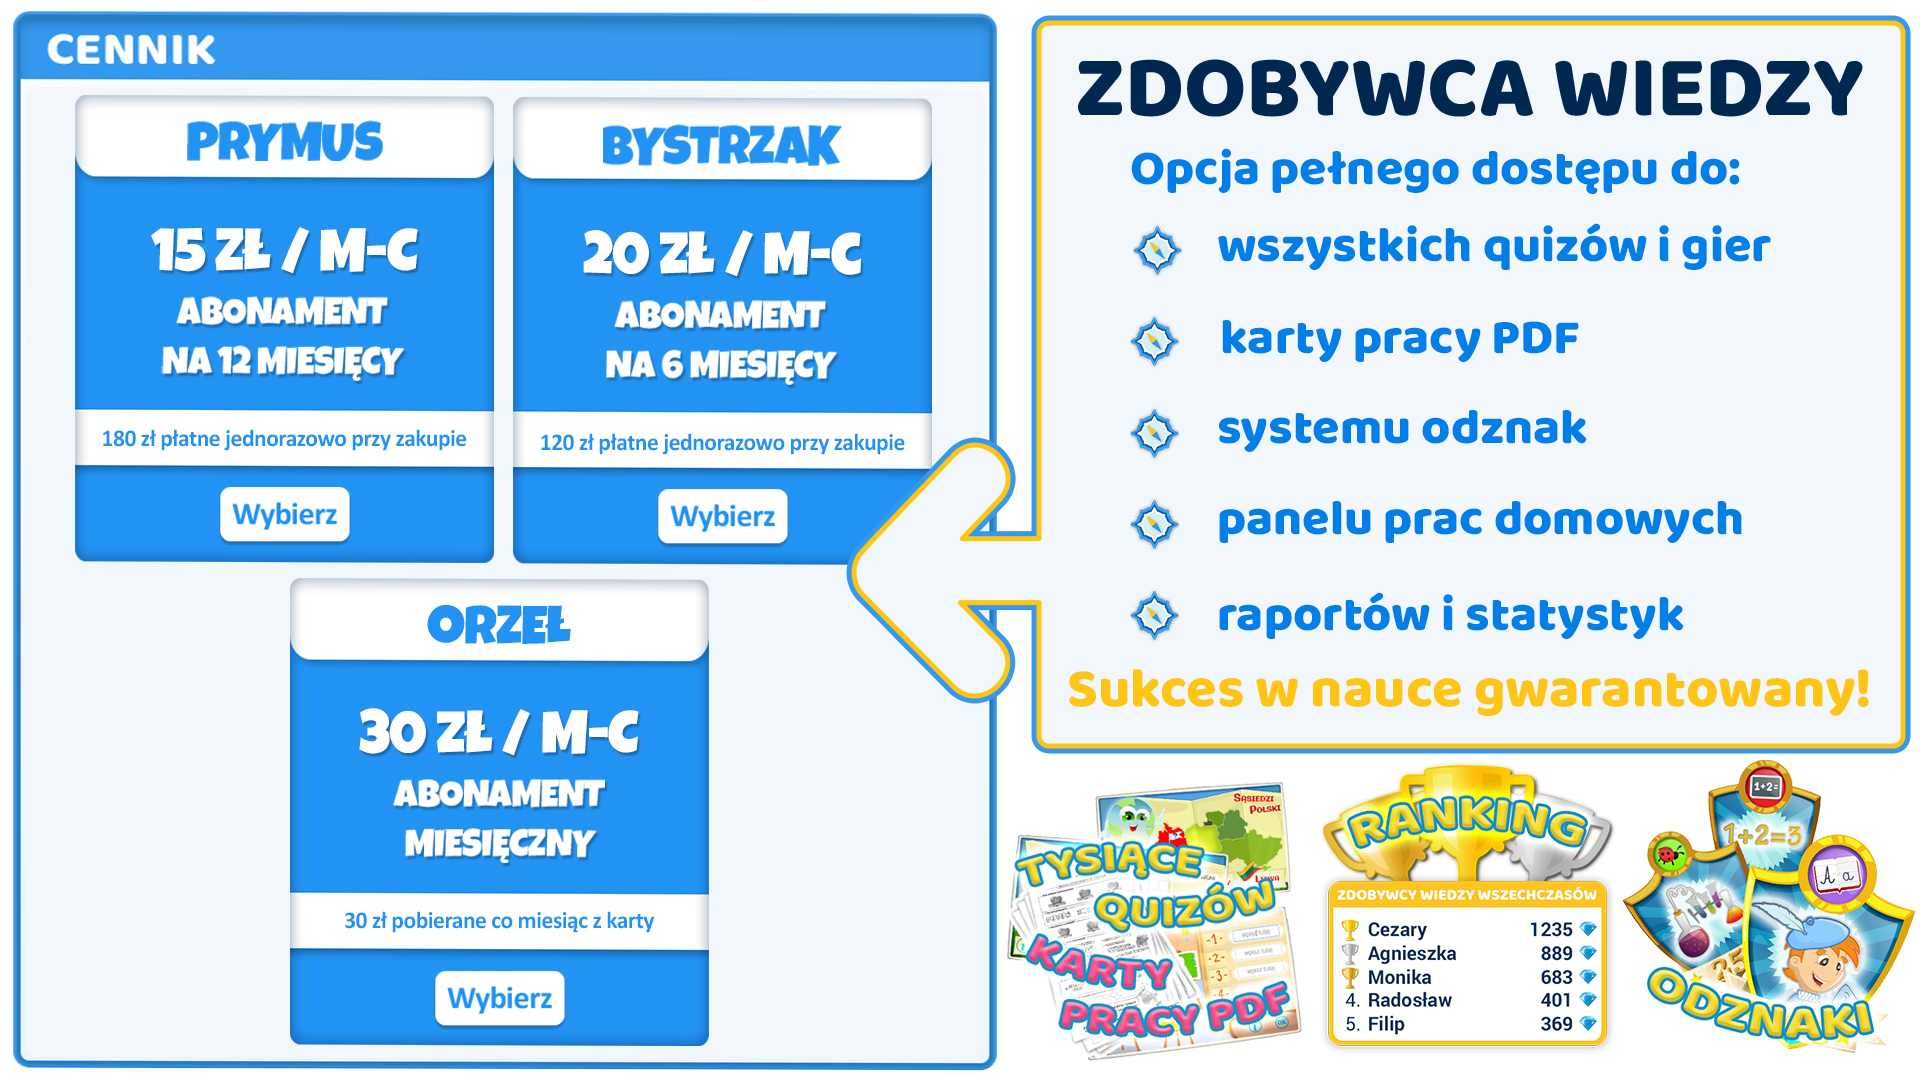 Rysunek pokazujący wszystkie możliwości korzystania z platformy ZdobywcyWiedzy.pl po wykupieniu abonamentu